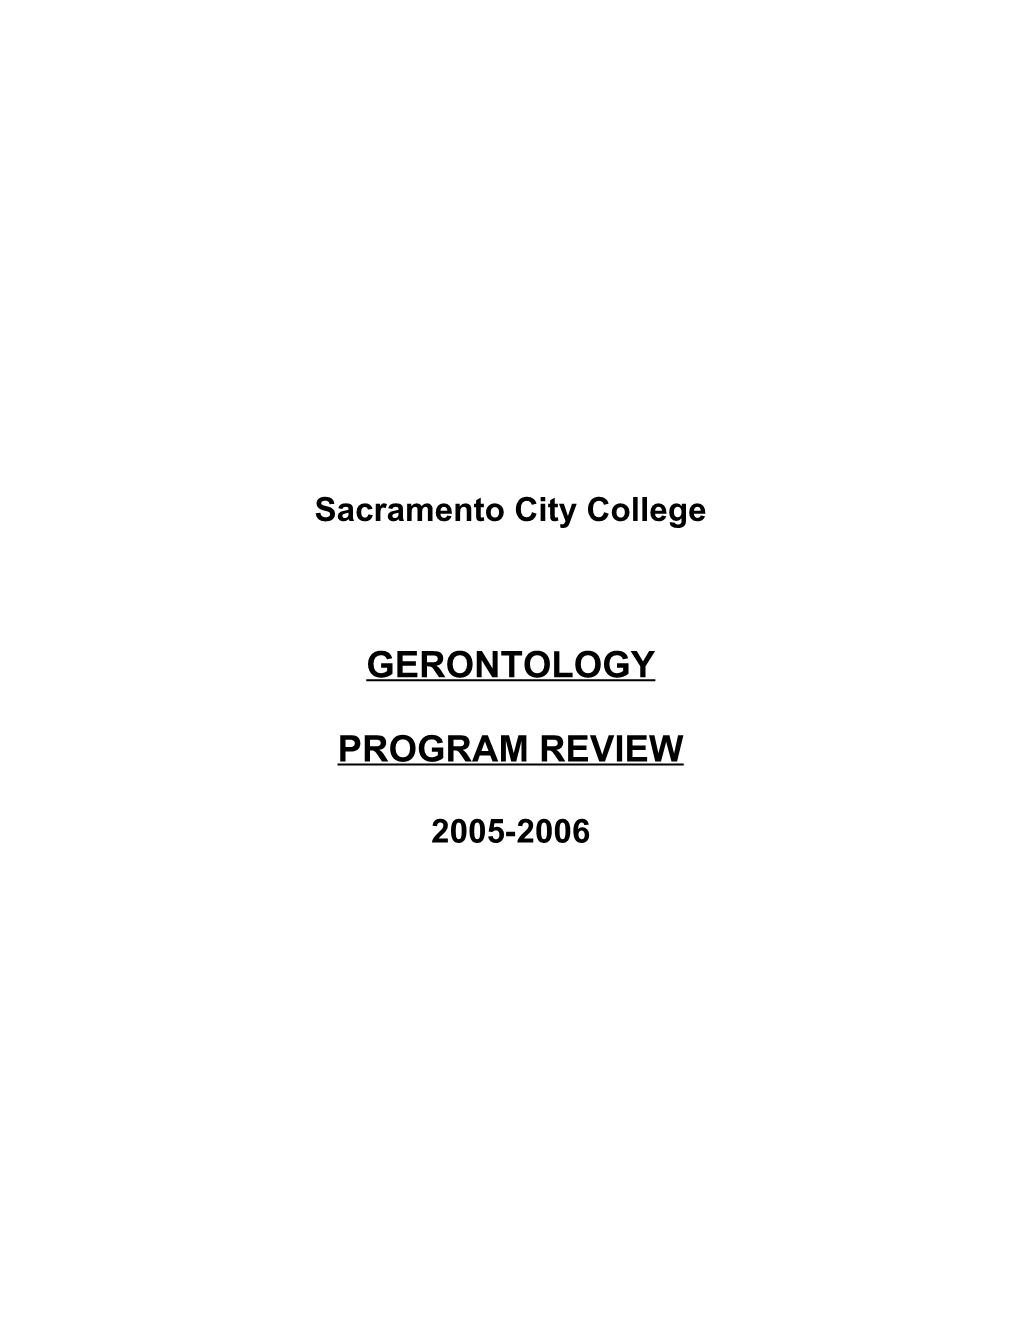 Sacramento City College s4